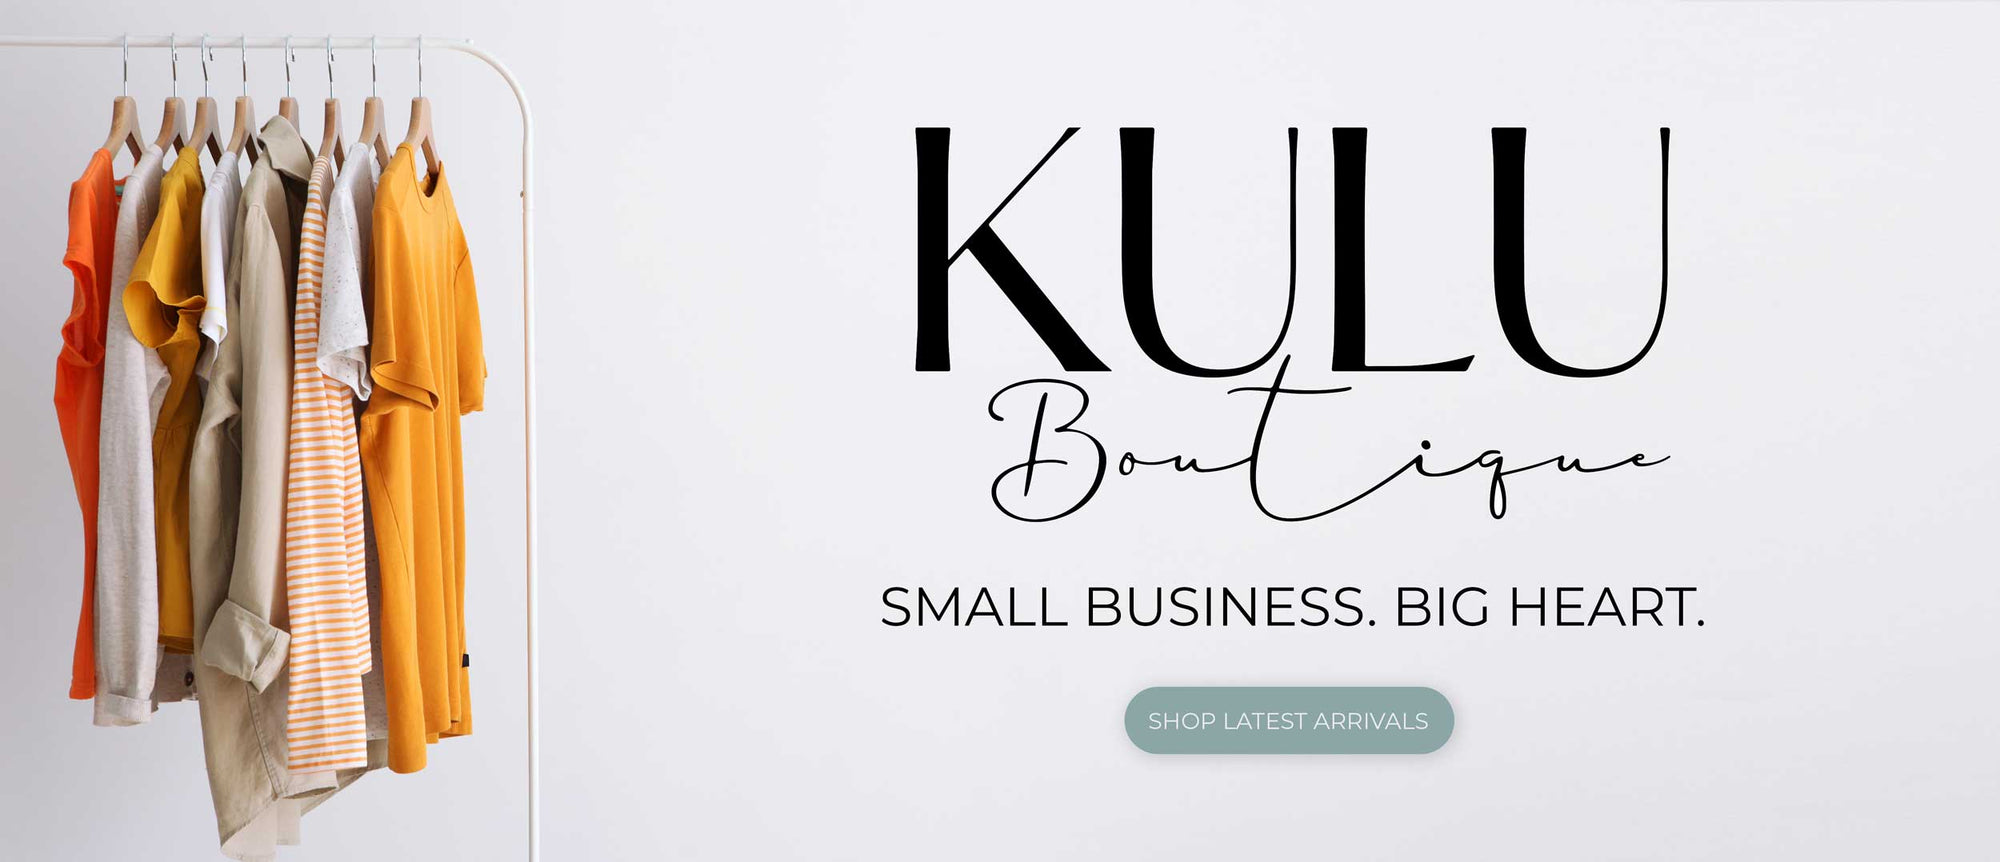 Kulu Boutique clothing